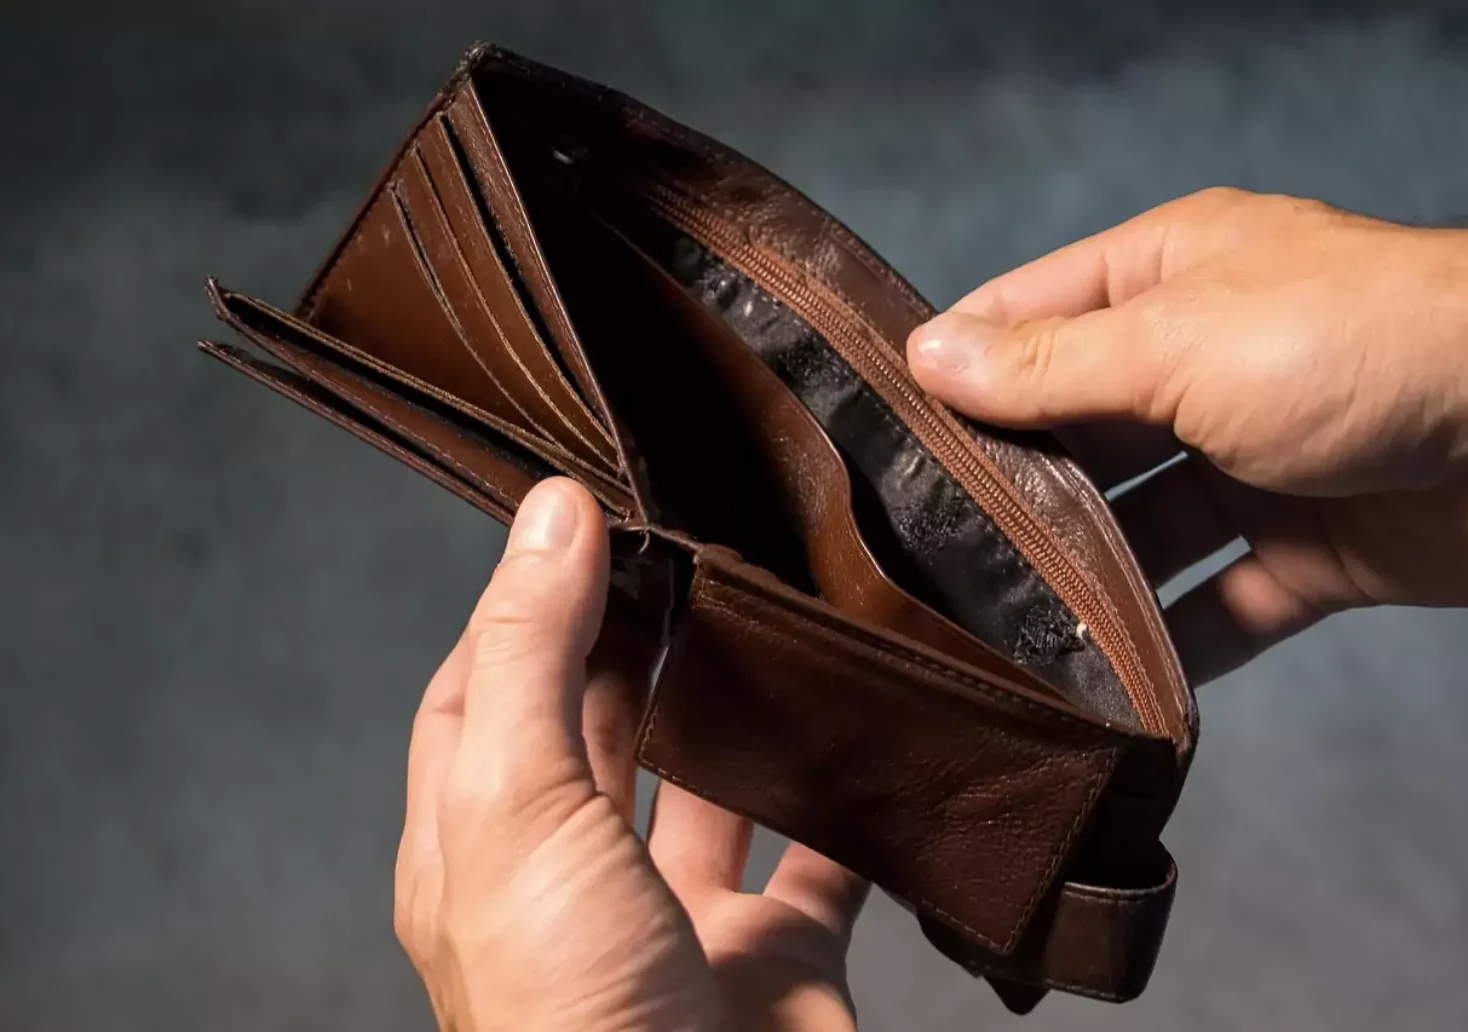 Foto in Beitrag von 5min.at: Zu sehen ist eine Person bzw. die Hände dieser Person, die eine leere Geldtasche aufhält.